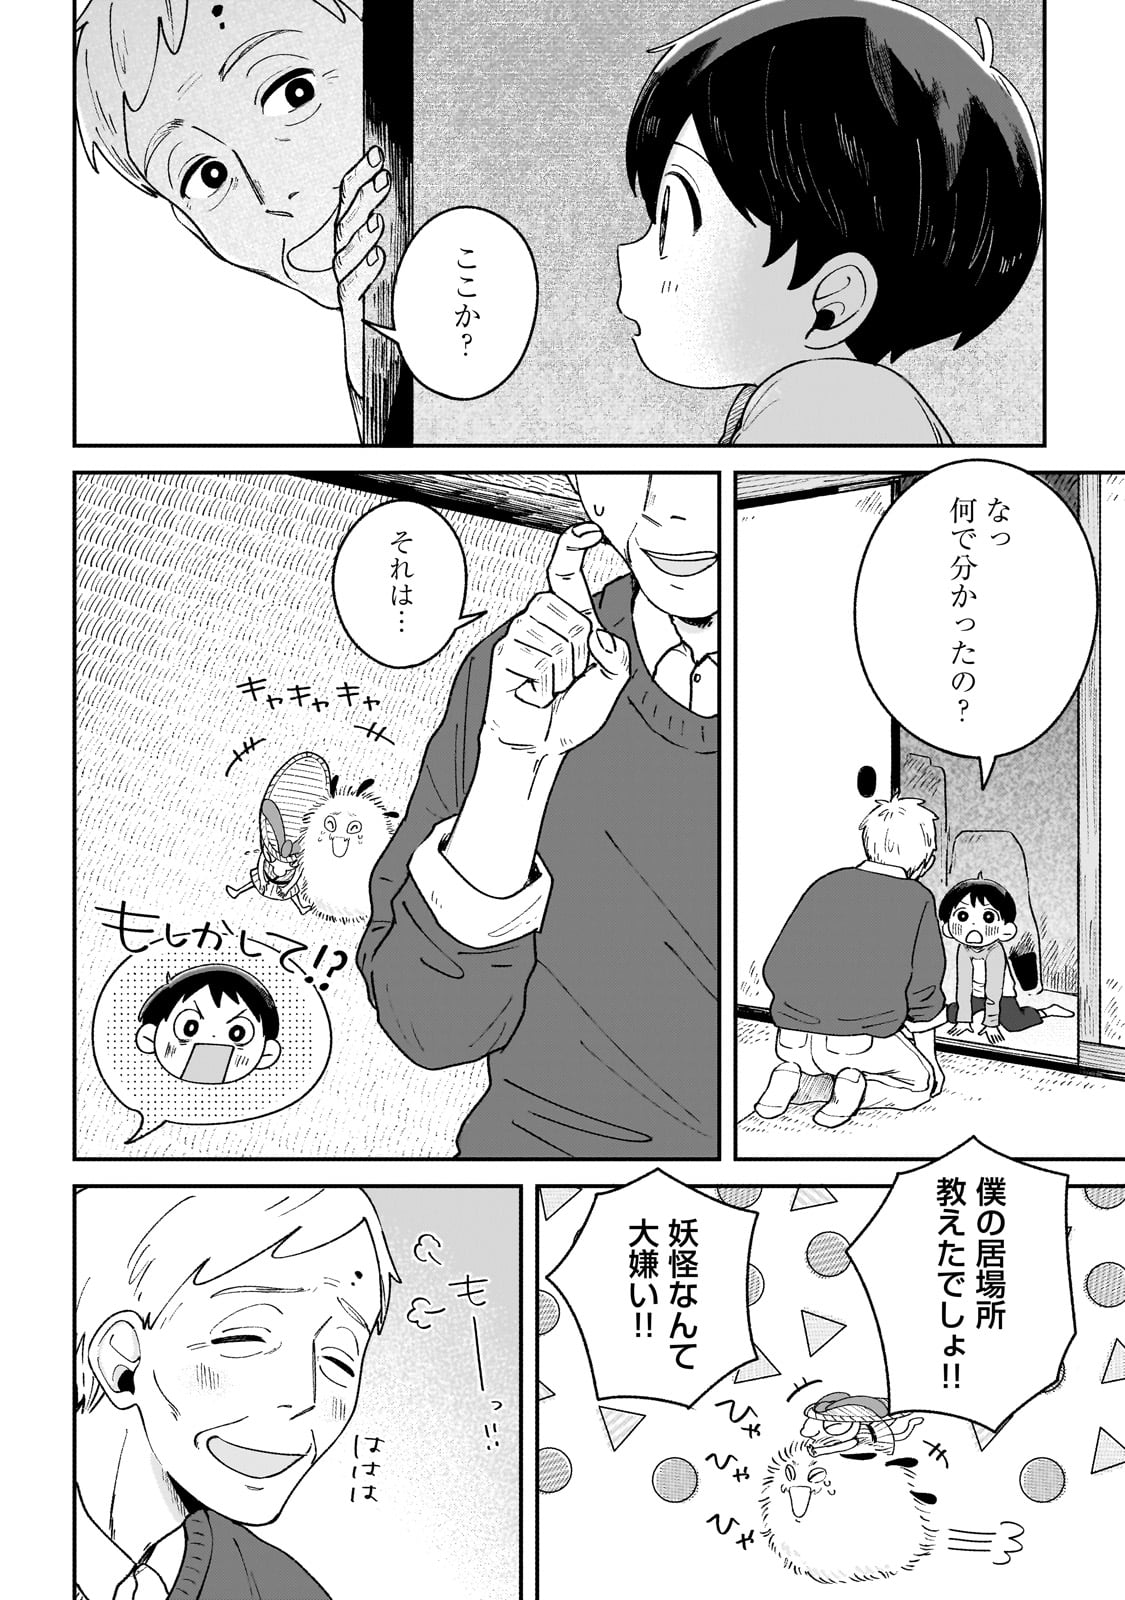 Boku to Ayakashi no 365 Nichi - Chapter 2 - Page 12